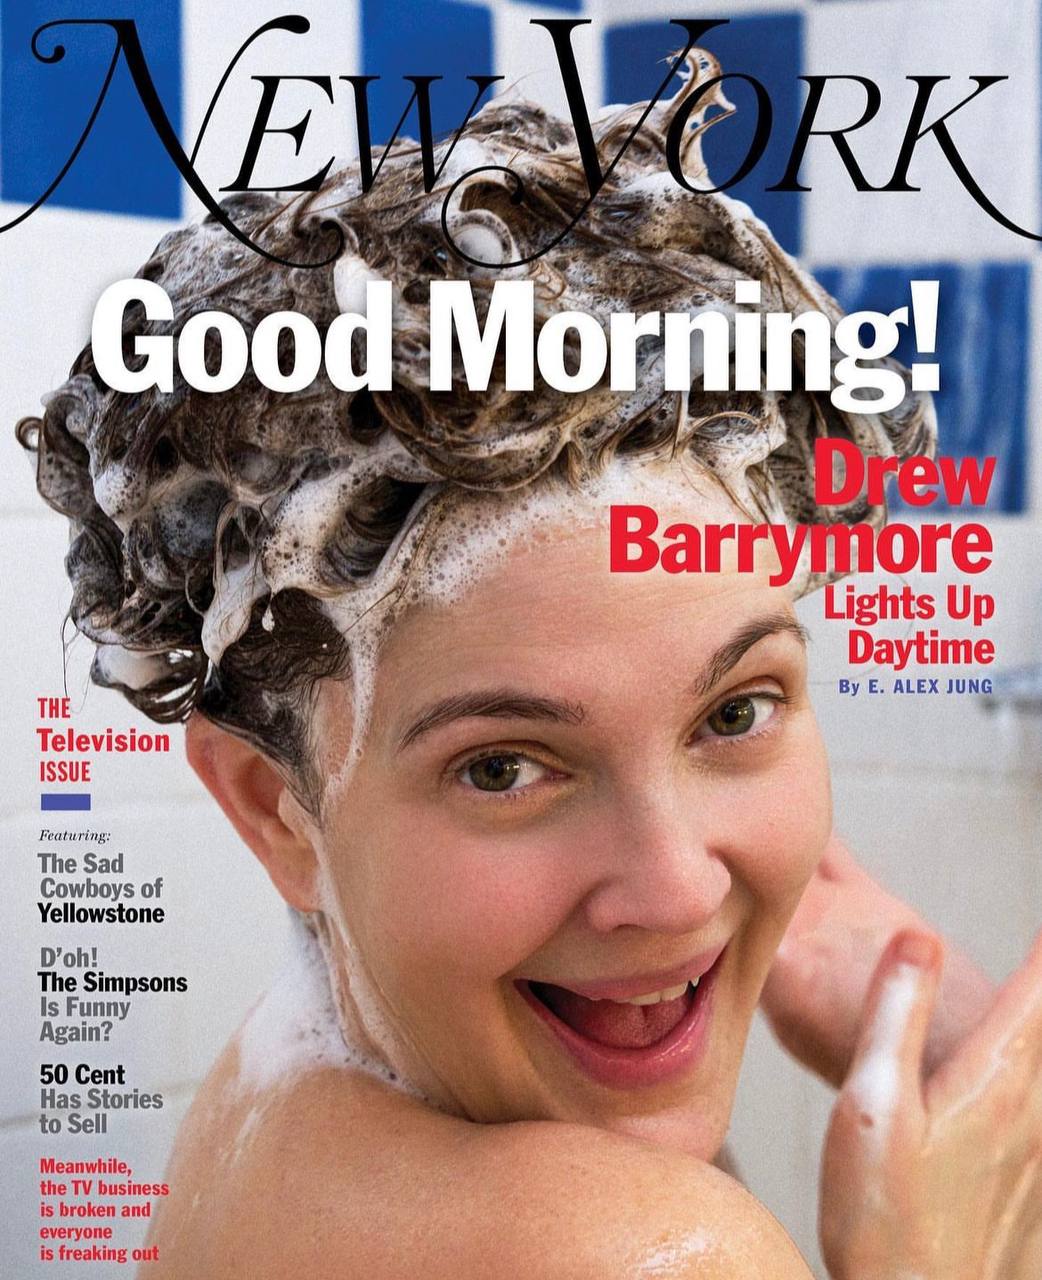 Дрю Бэрримор сделала игривую фотосессию из душа для New York Magazine. ТОП фото молодой Дрю Бэрримор для Playboy и других изданий